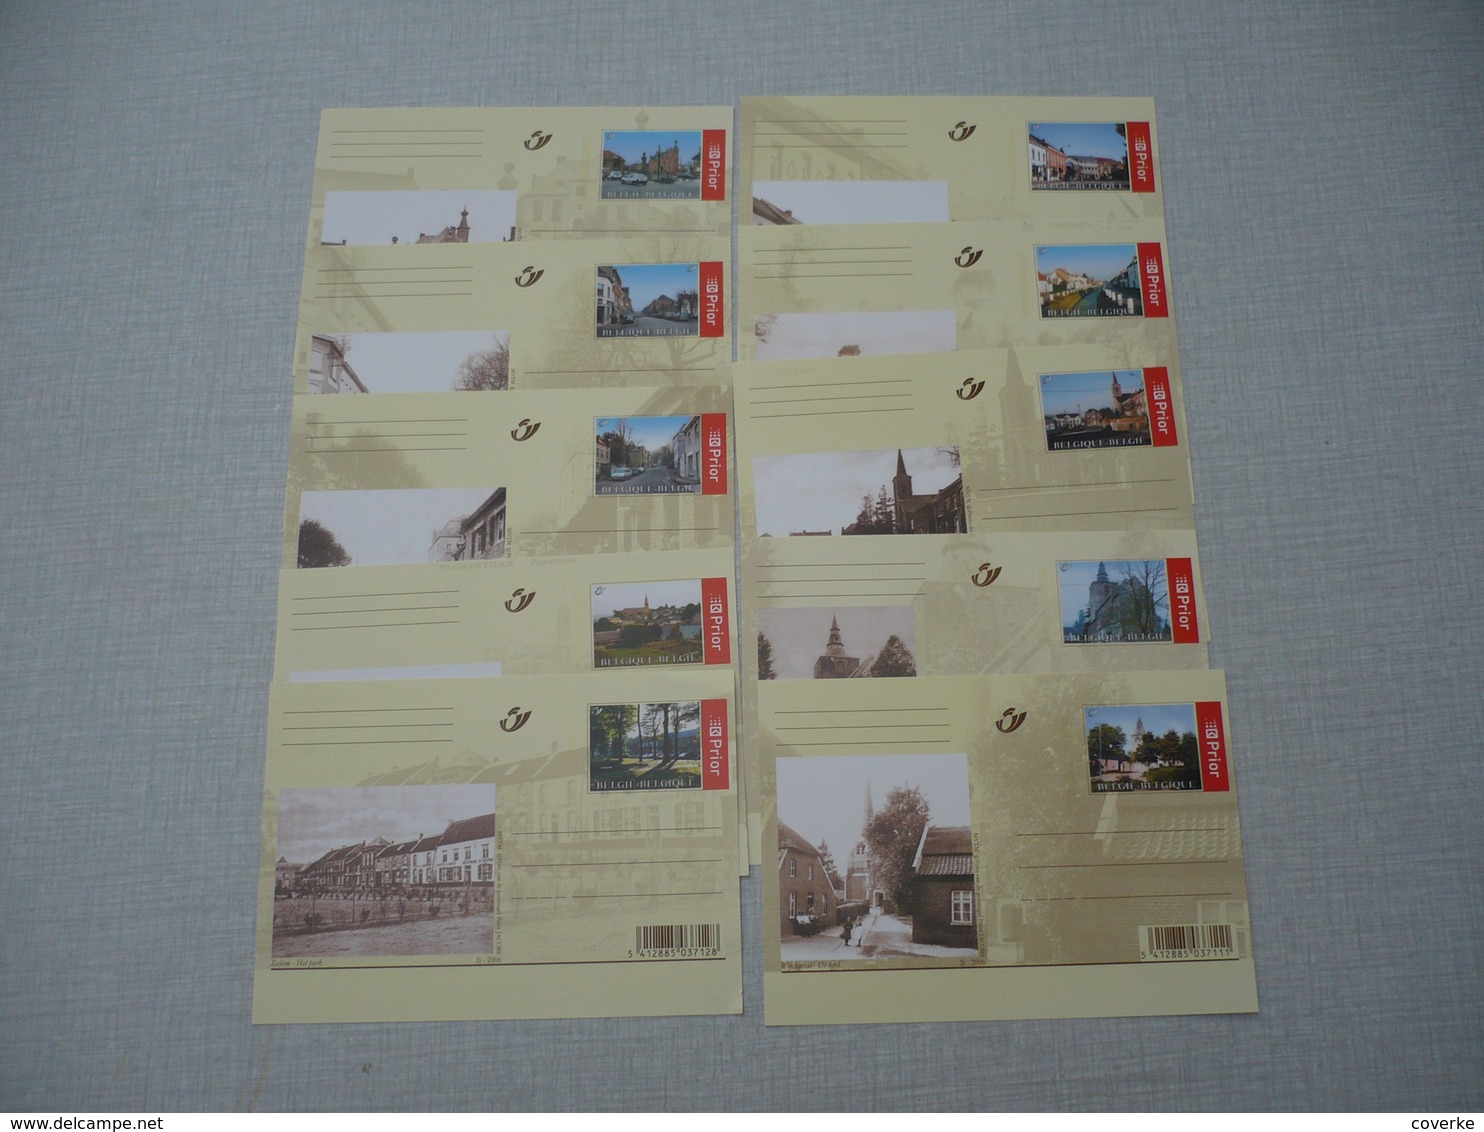 enorme verzameling nieuwe postkaarten , postbladen , briefkaarten ,adres wijzegingskaarten , zie fotos . alles staan er